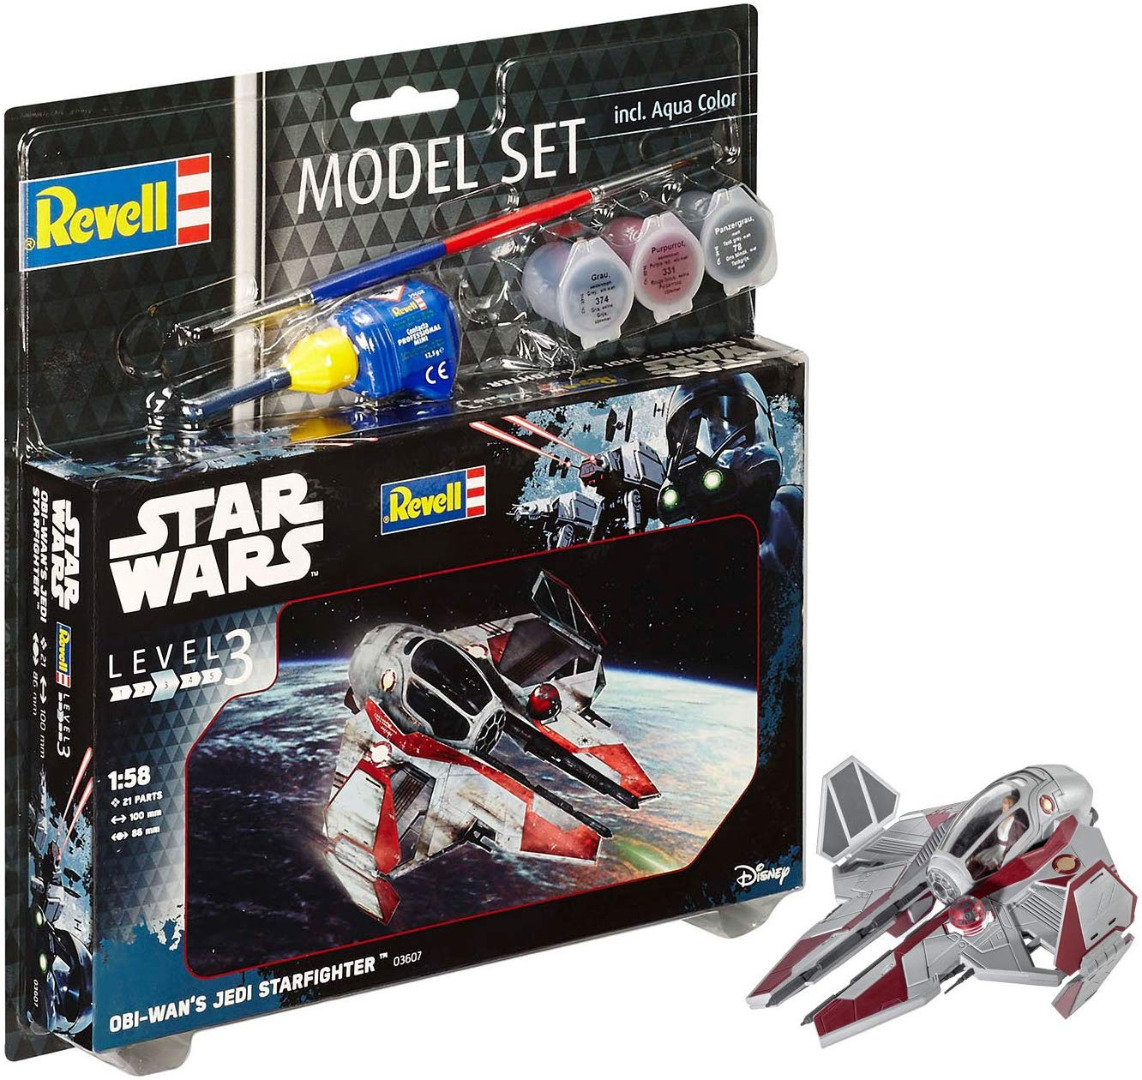 Construção REVELL Model Set Star Wars 1/58 Obi Wan's Jedi Starfighter 10 cm